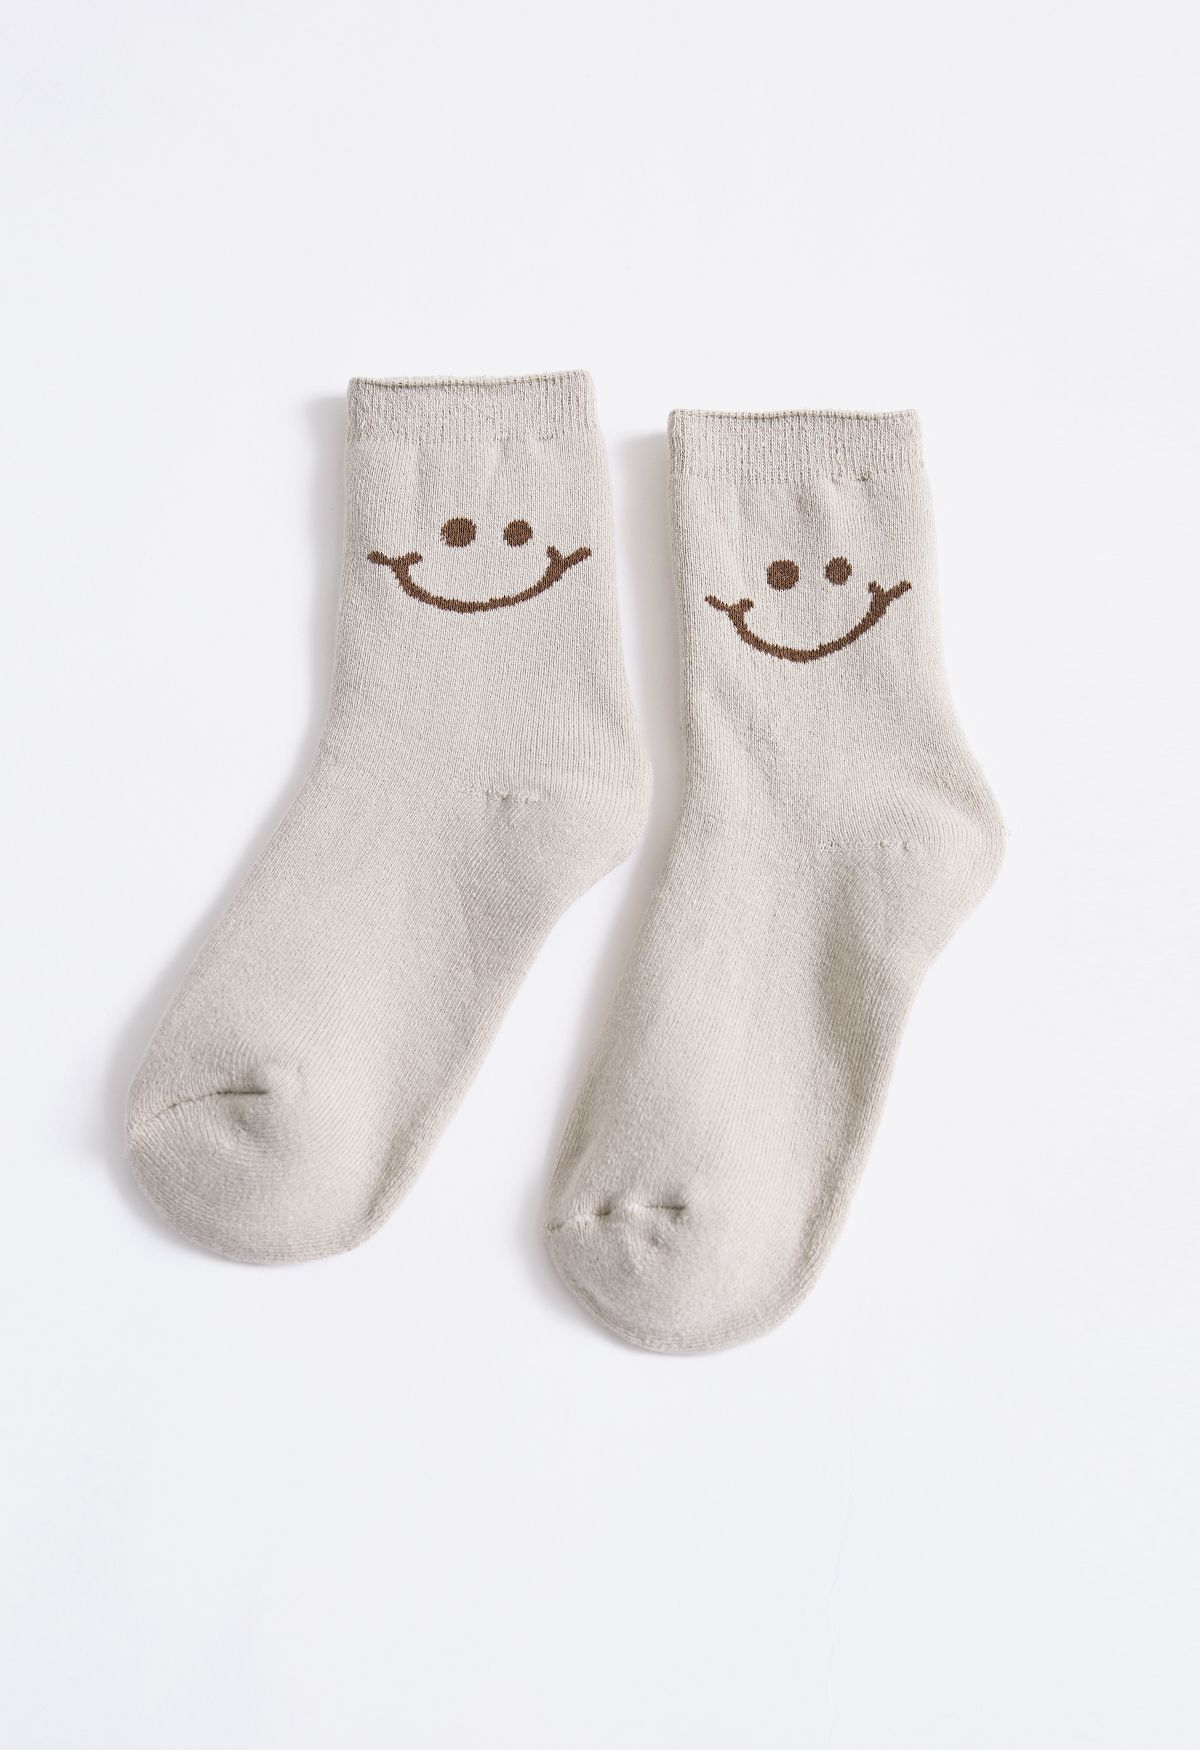 Bequeme Crew-Socken mit lächelndem Gesicht